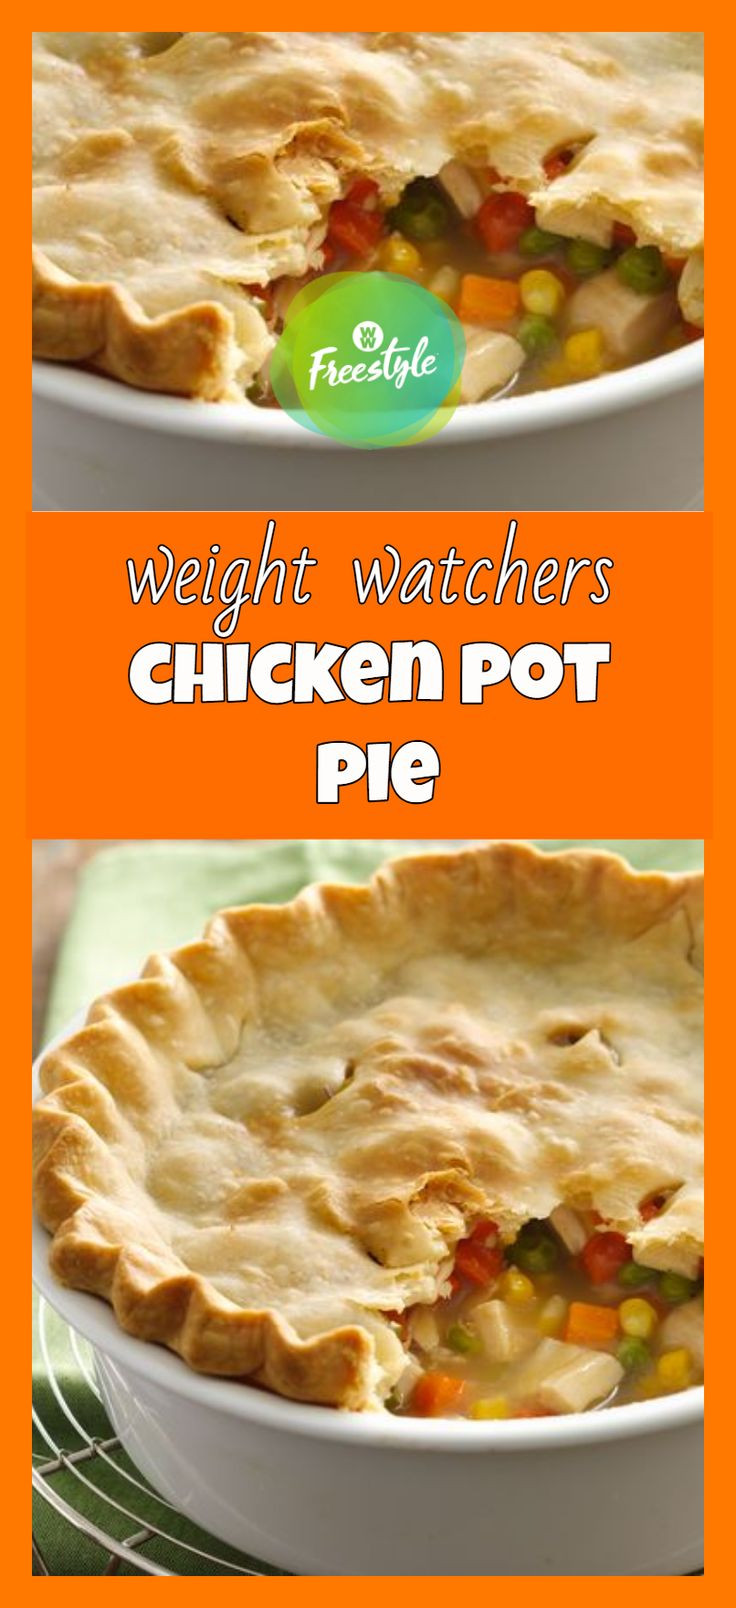 Weight Watcher Ground Turkey Recipes
 Pin on Weight watchers ground turkey recipes for dinner